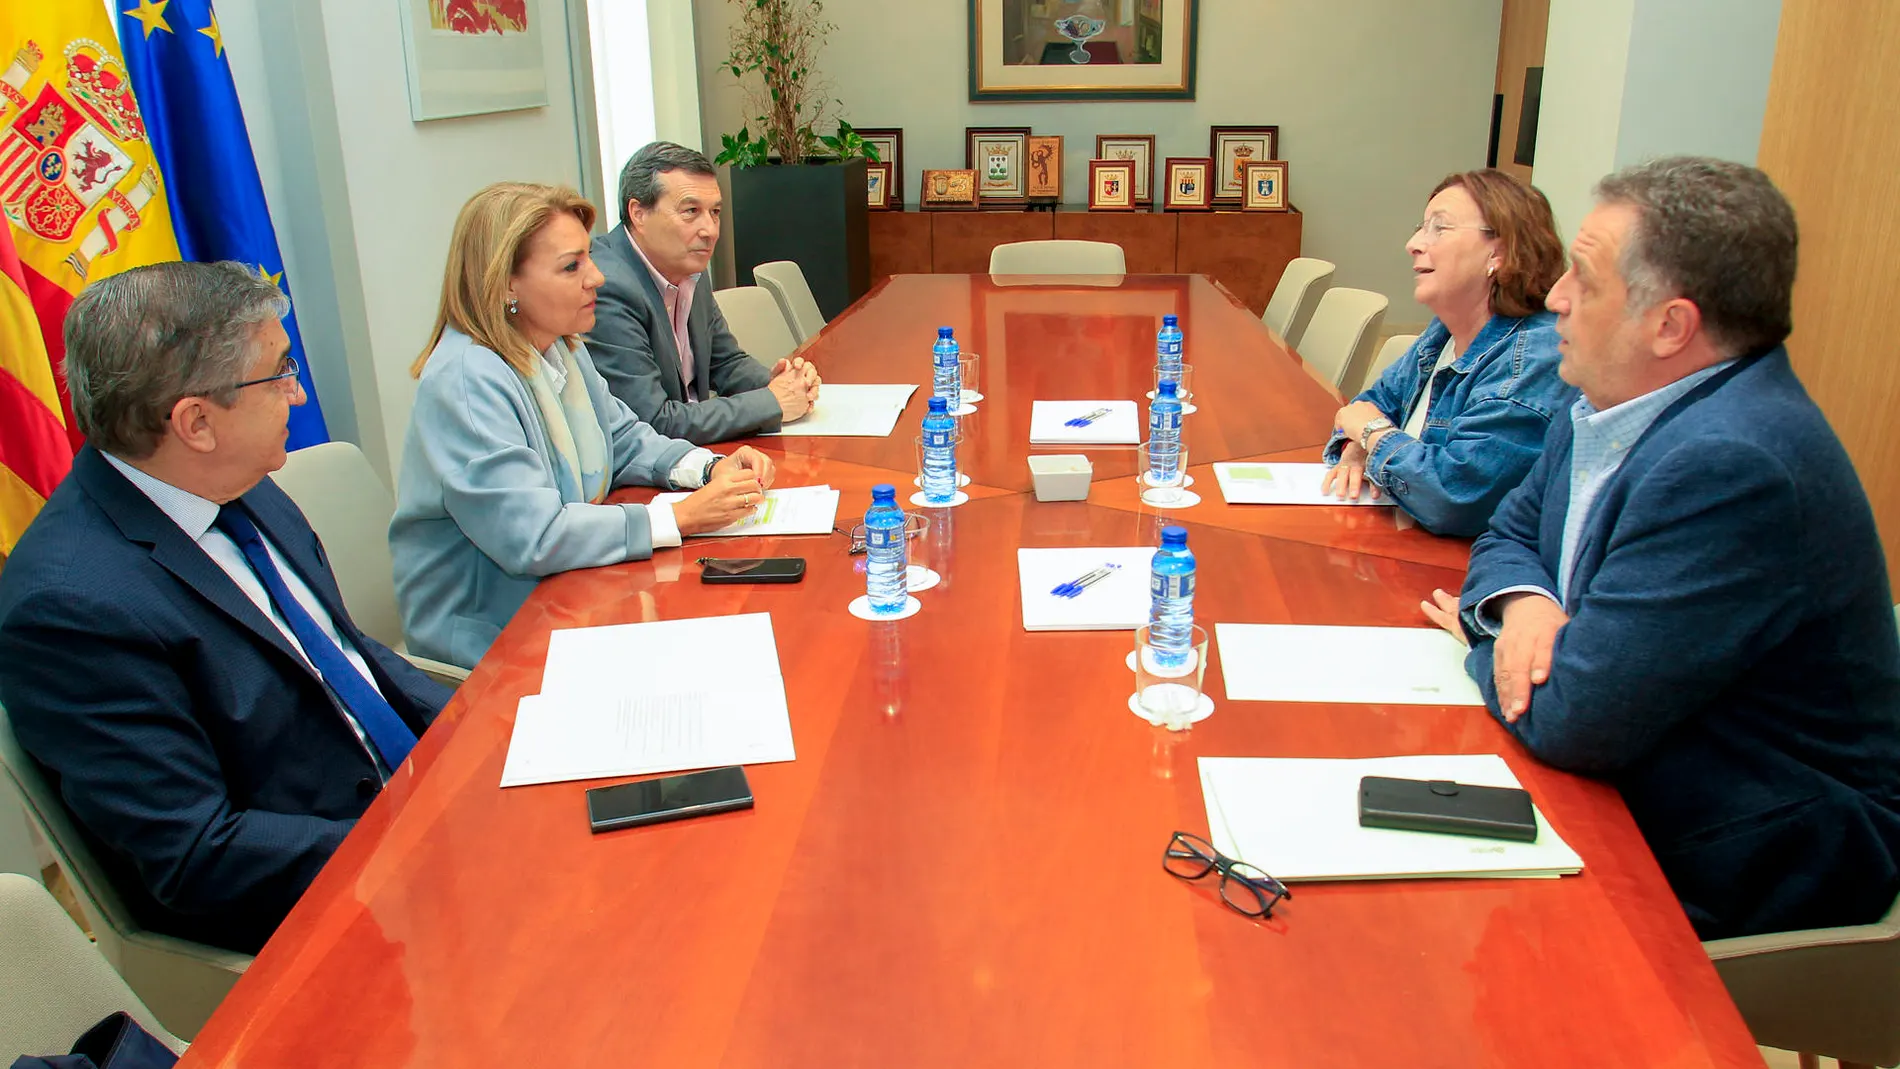 Reunión de la comisión interdepartamental de salud mental y de adicciones hoy en la sede del Gobierno valenciano en Alicante.